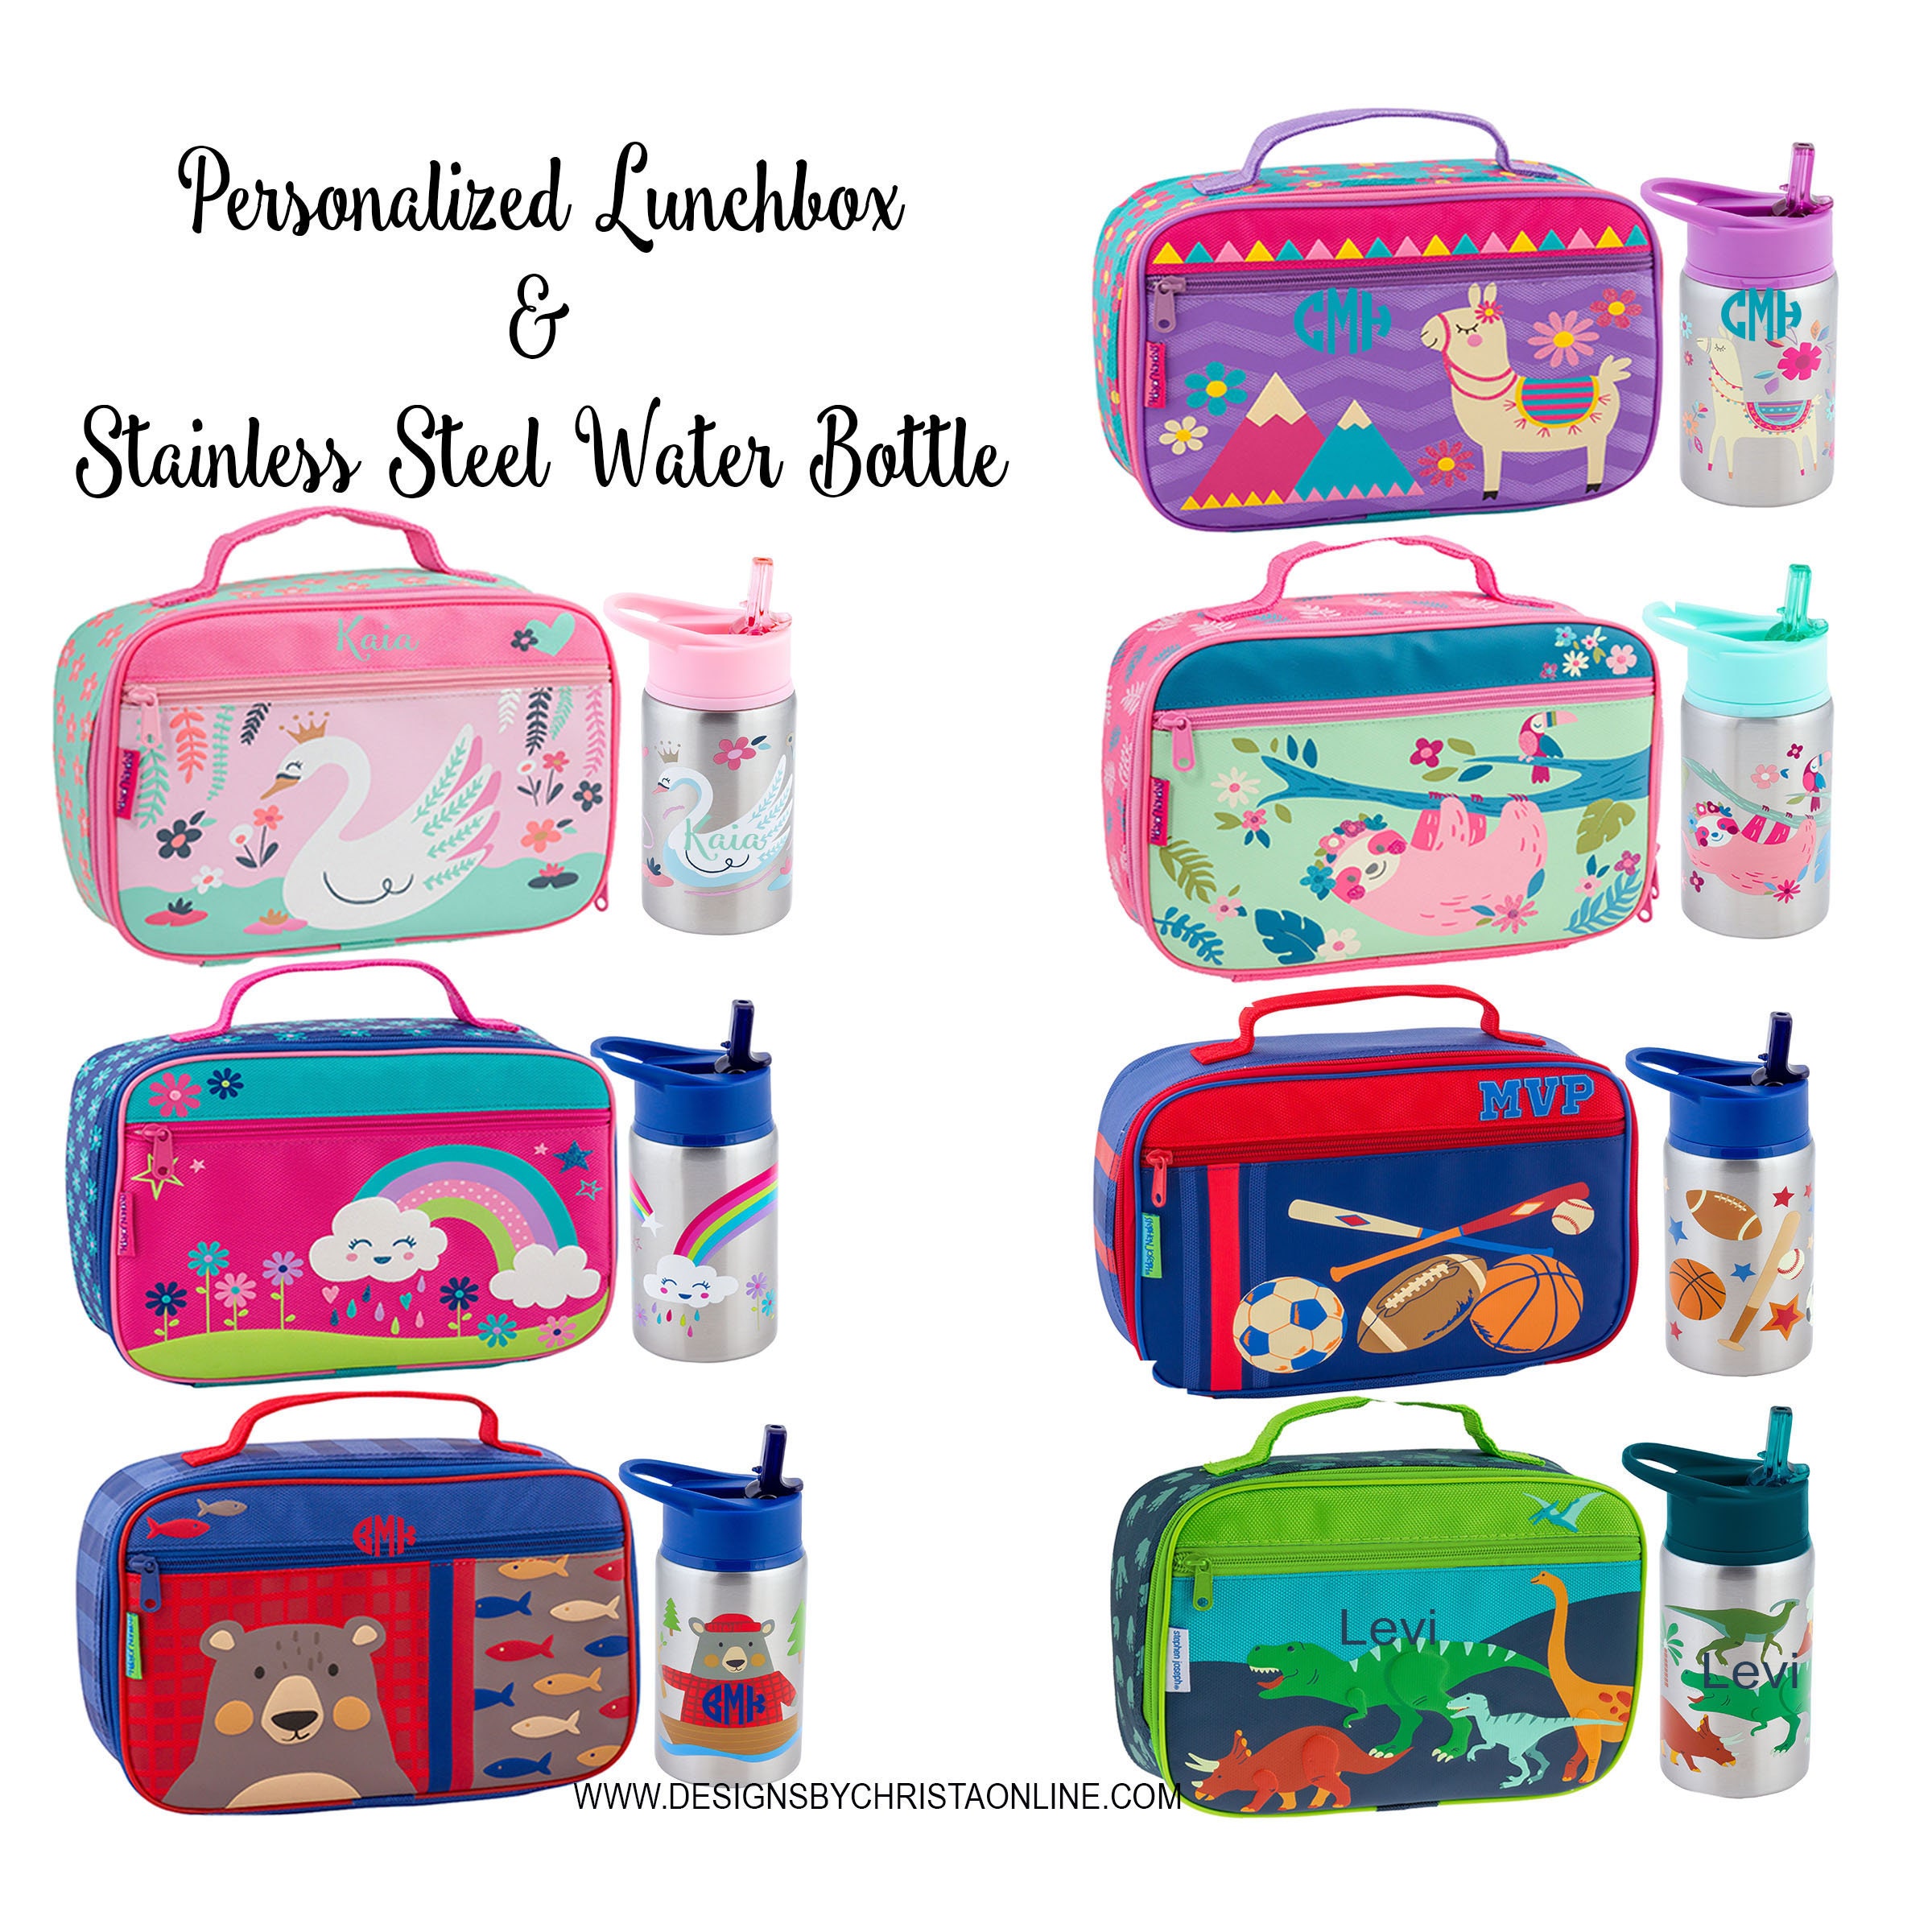 Personalized Lunchbox and Water Bottle / Stephen Joseph / Monogrammed  Lunchbox and Water Bottle / Stainless Steel Water Bottle / School 